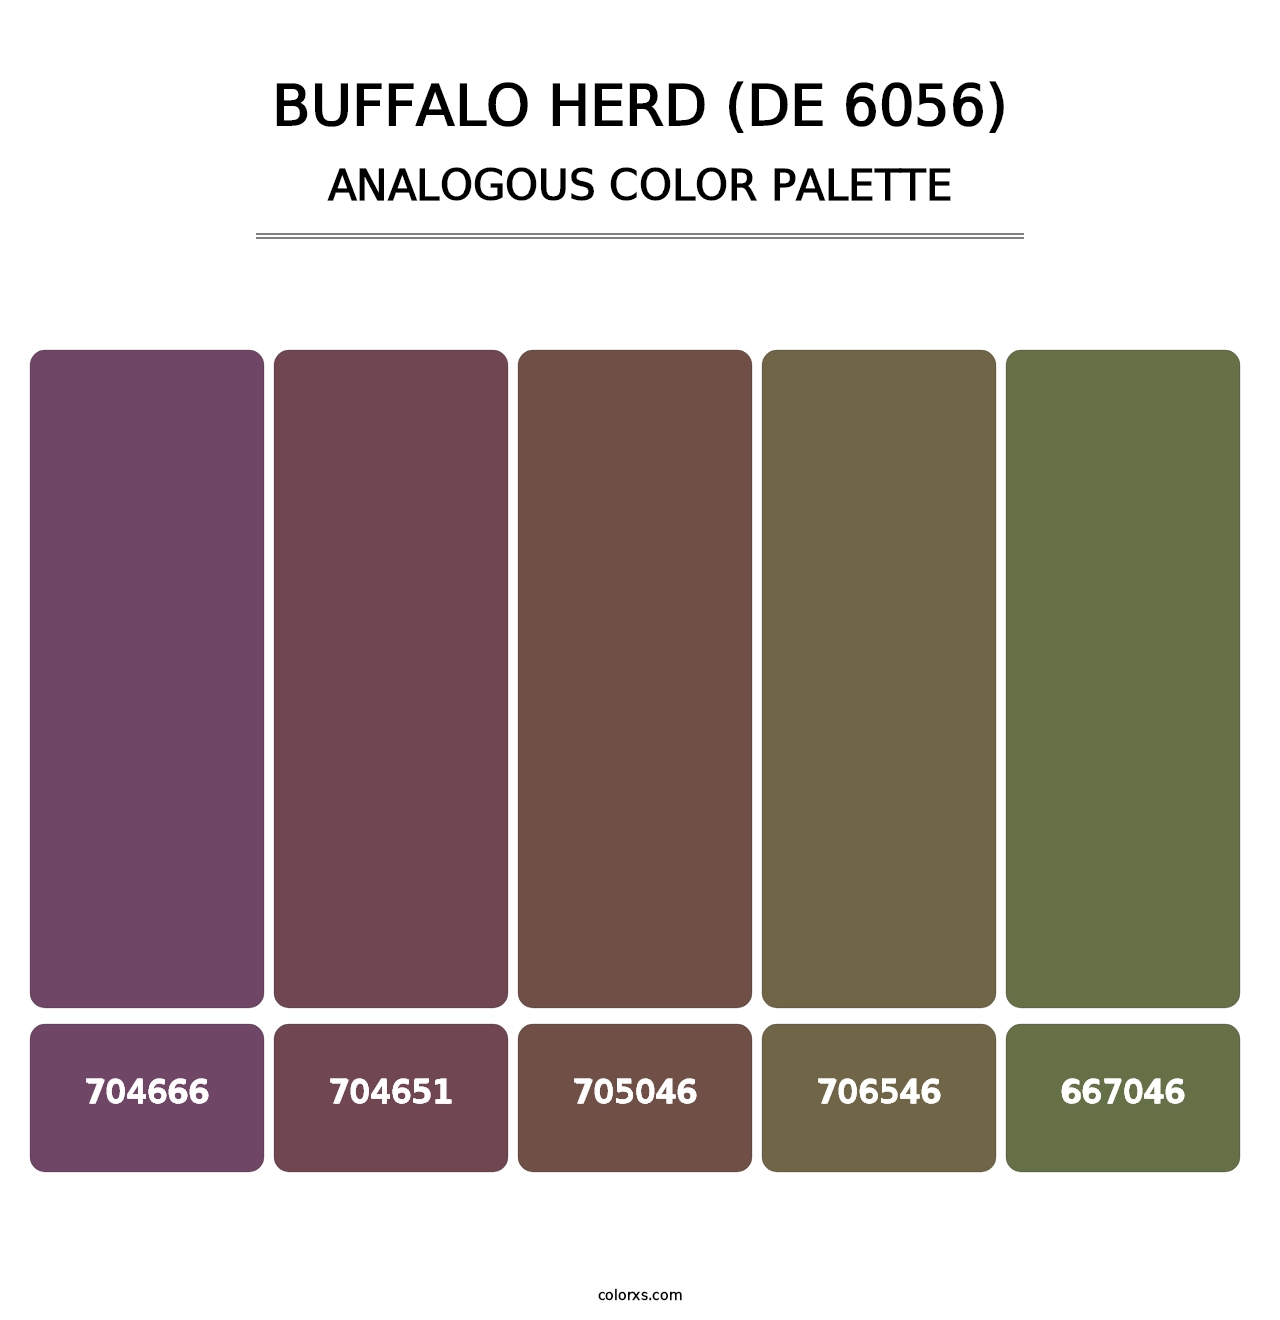 Buffalo Herd (DE 6056) - Analogous Color Palette